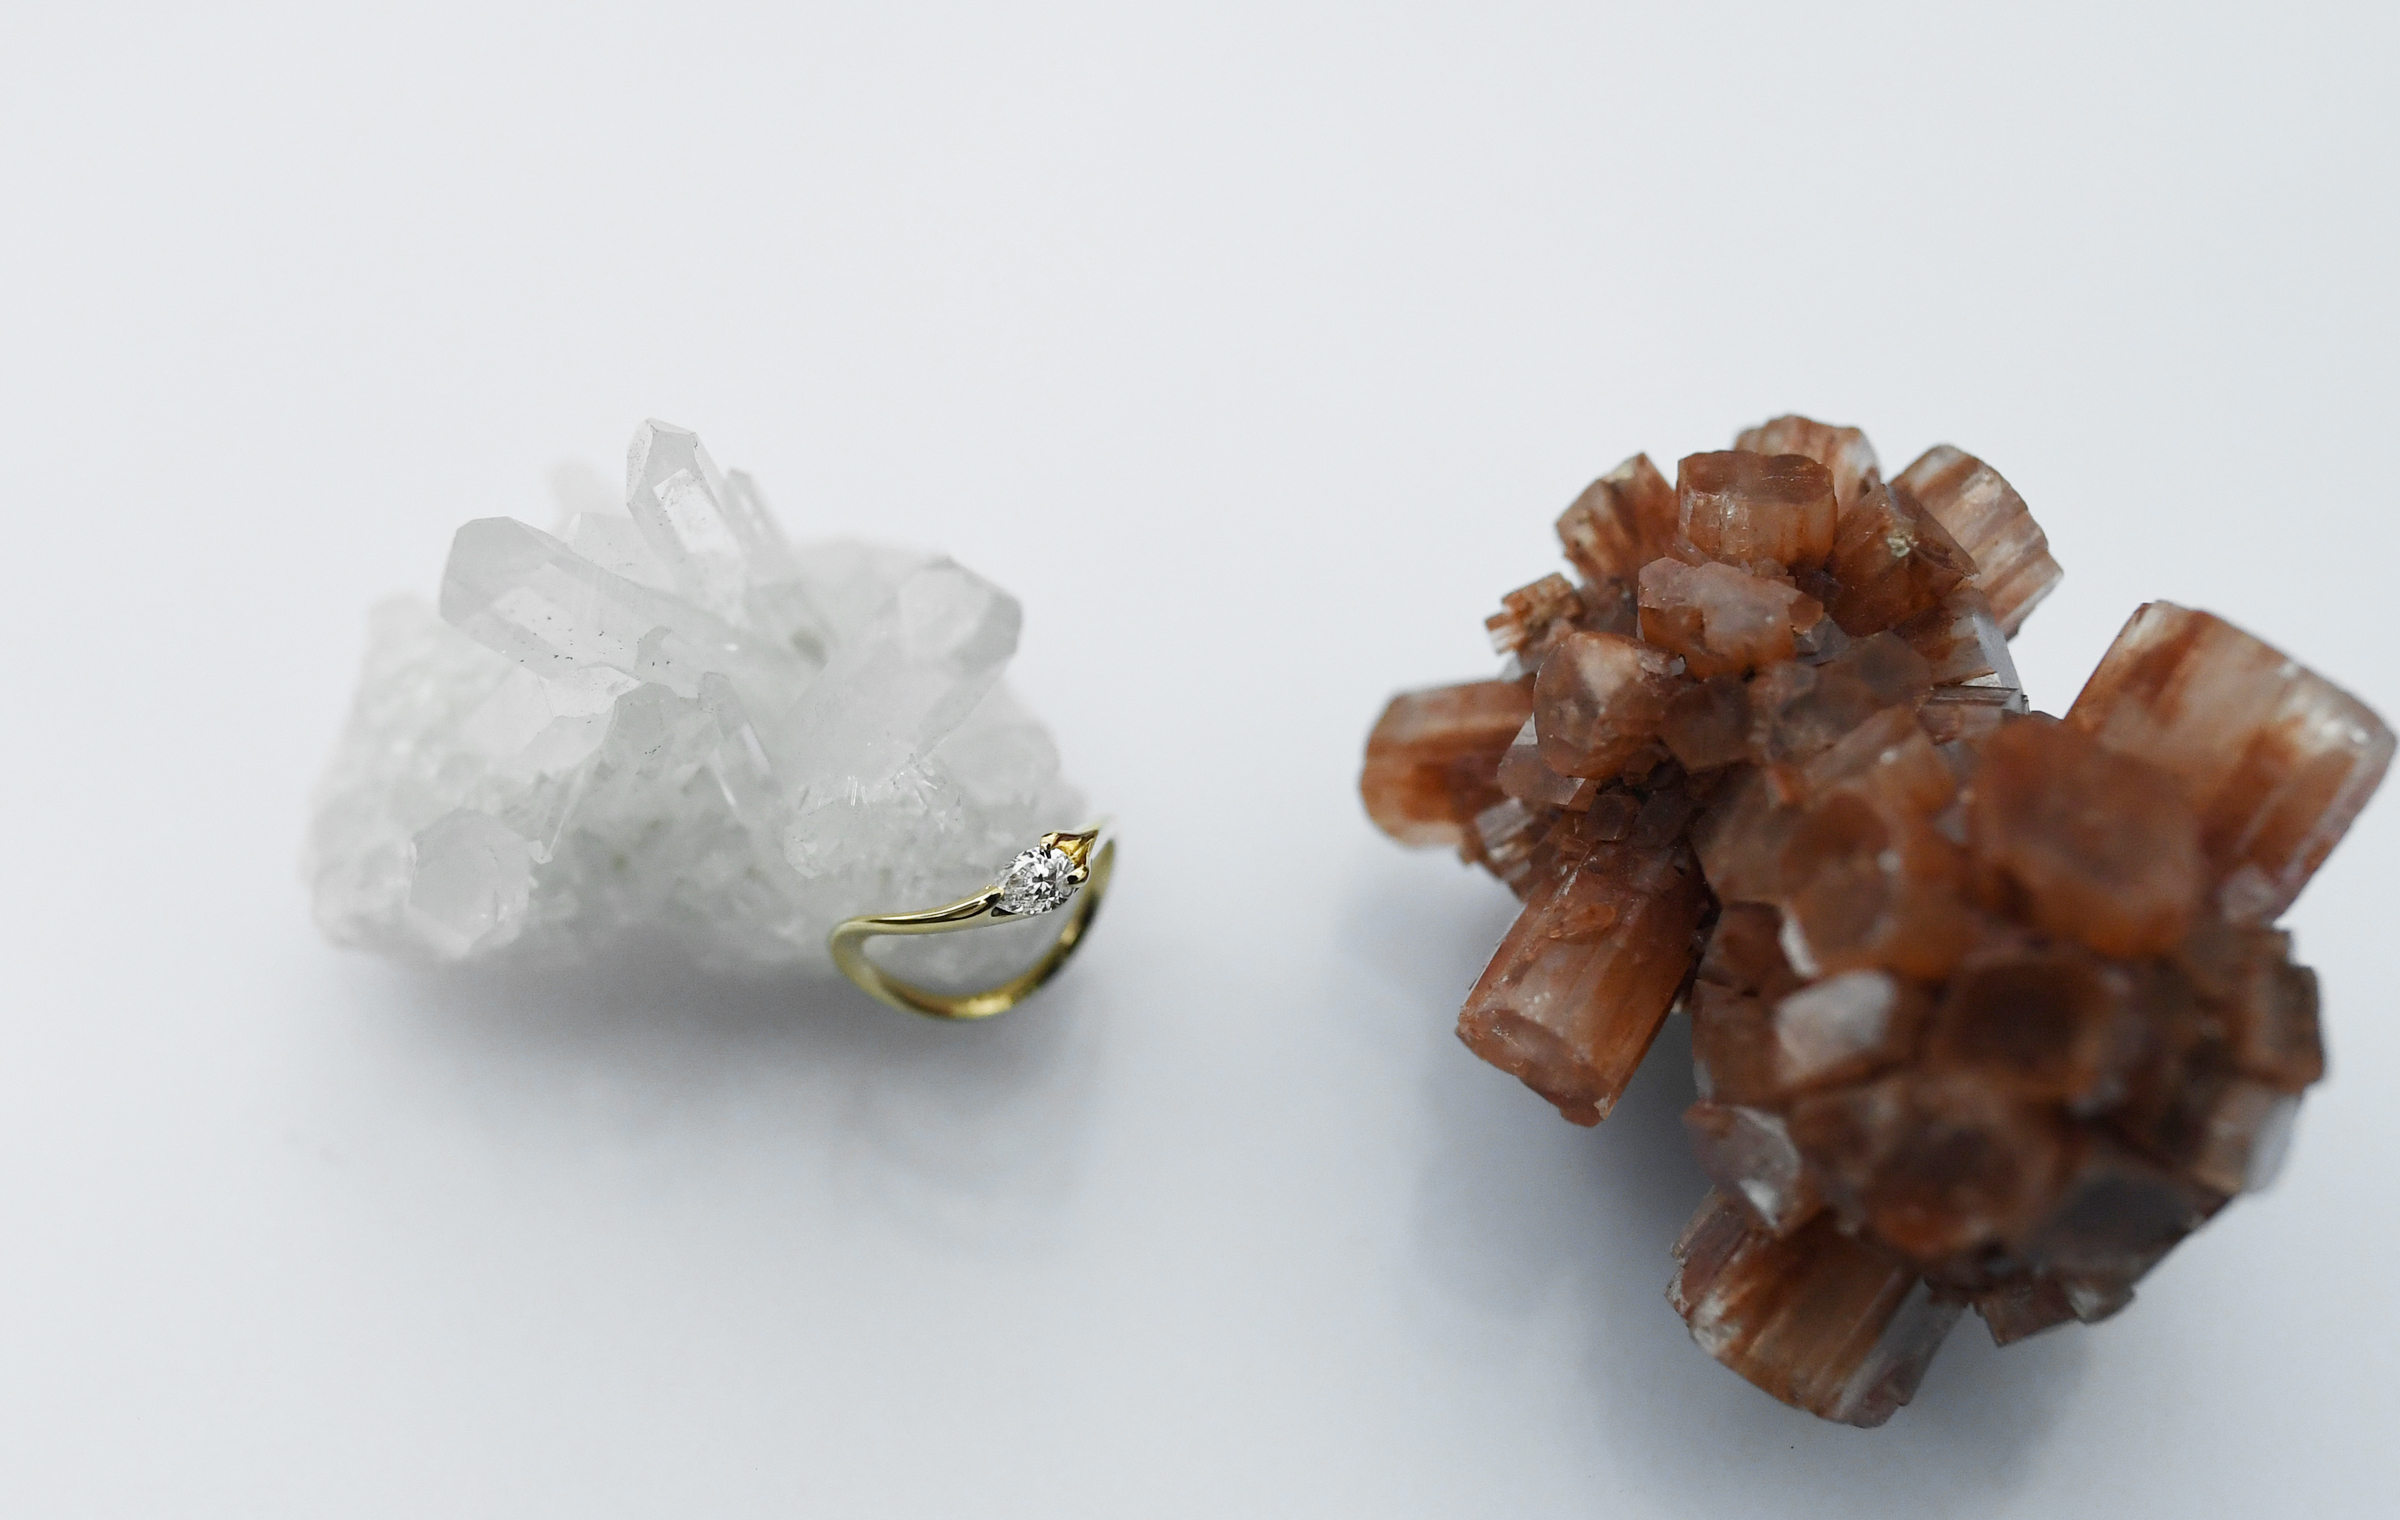 ペアシェイプカットのダイヤモンドを使用した婚約指輪オーダーメイドサンプルになります。